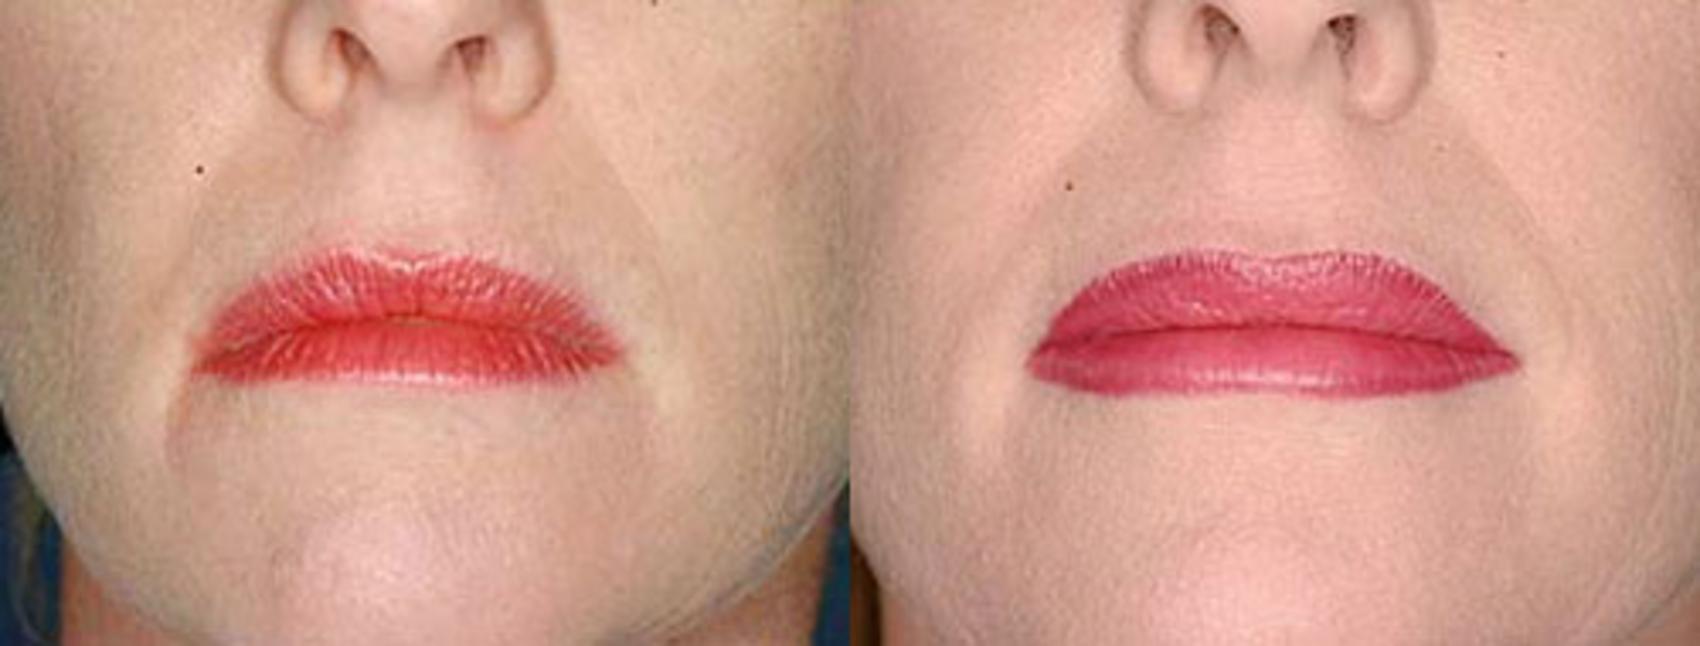 Lip Implants Case 97 Before & After View #1 | Louisville, KY | CaloSpa® Rejuvenation Center